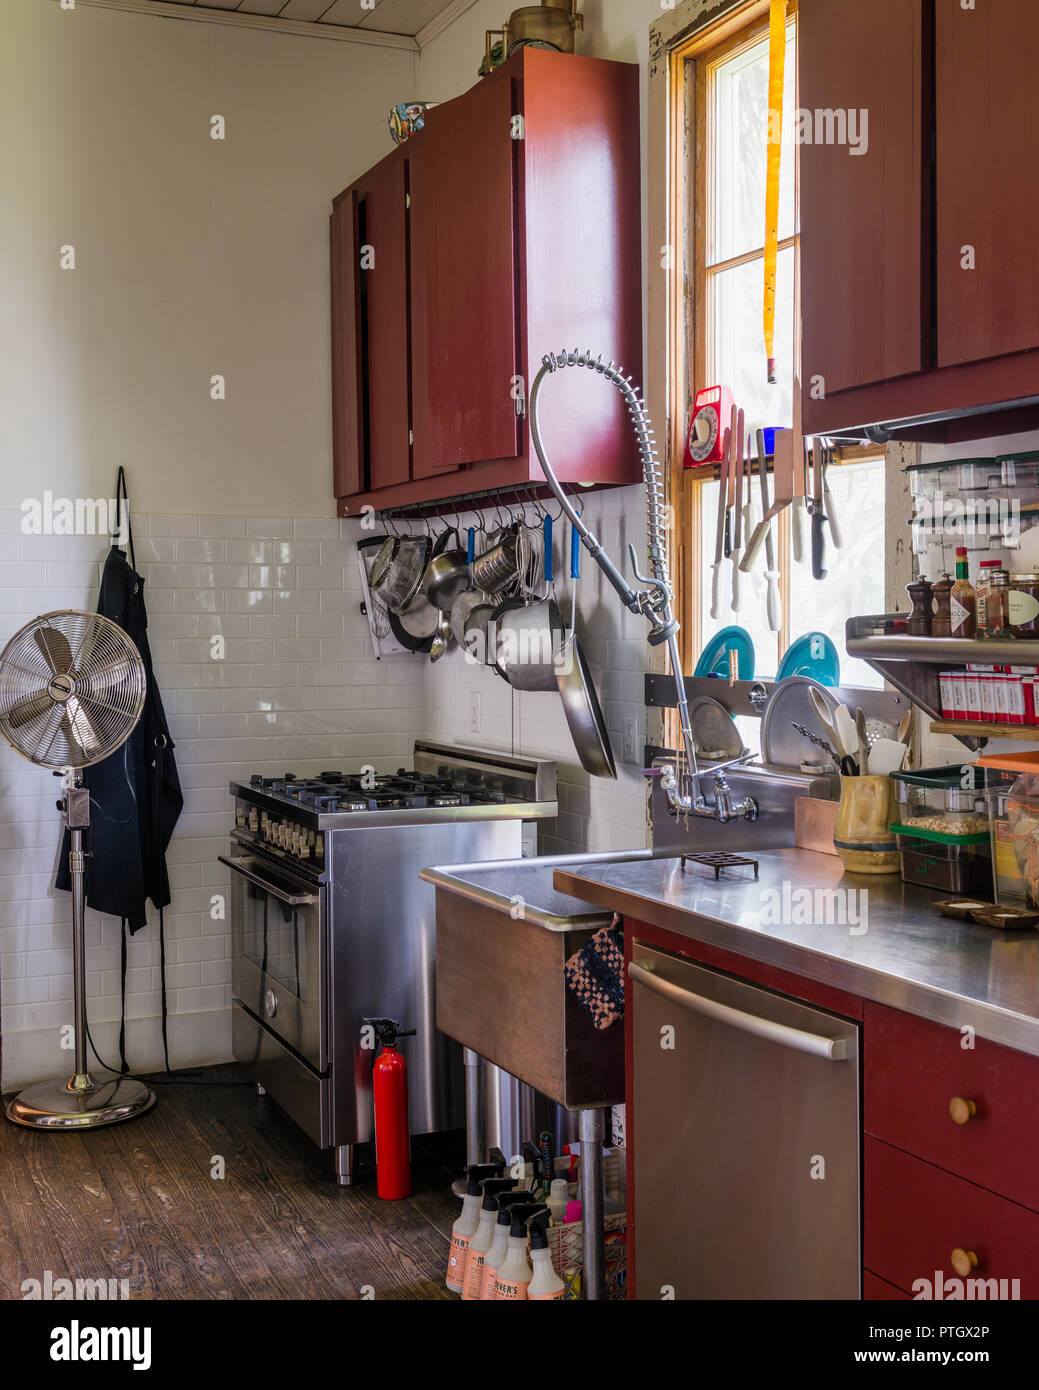 Memorizzazione nella piccola cucina dipinta fienile tradizionale in rosso con vasi appesi sul filo ritorto appendiabiti fornello di cui sopra Foto Stock